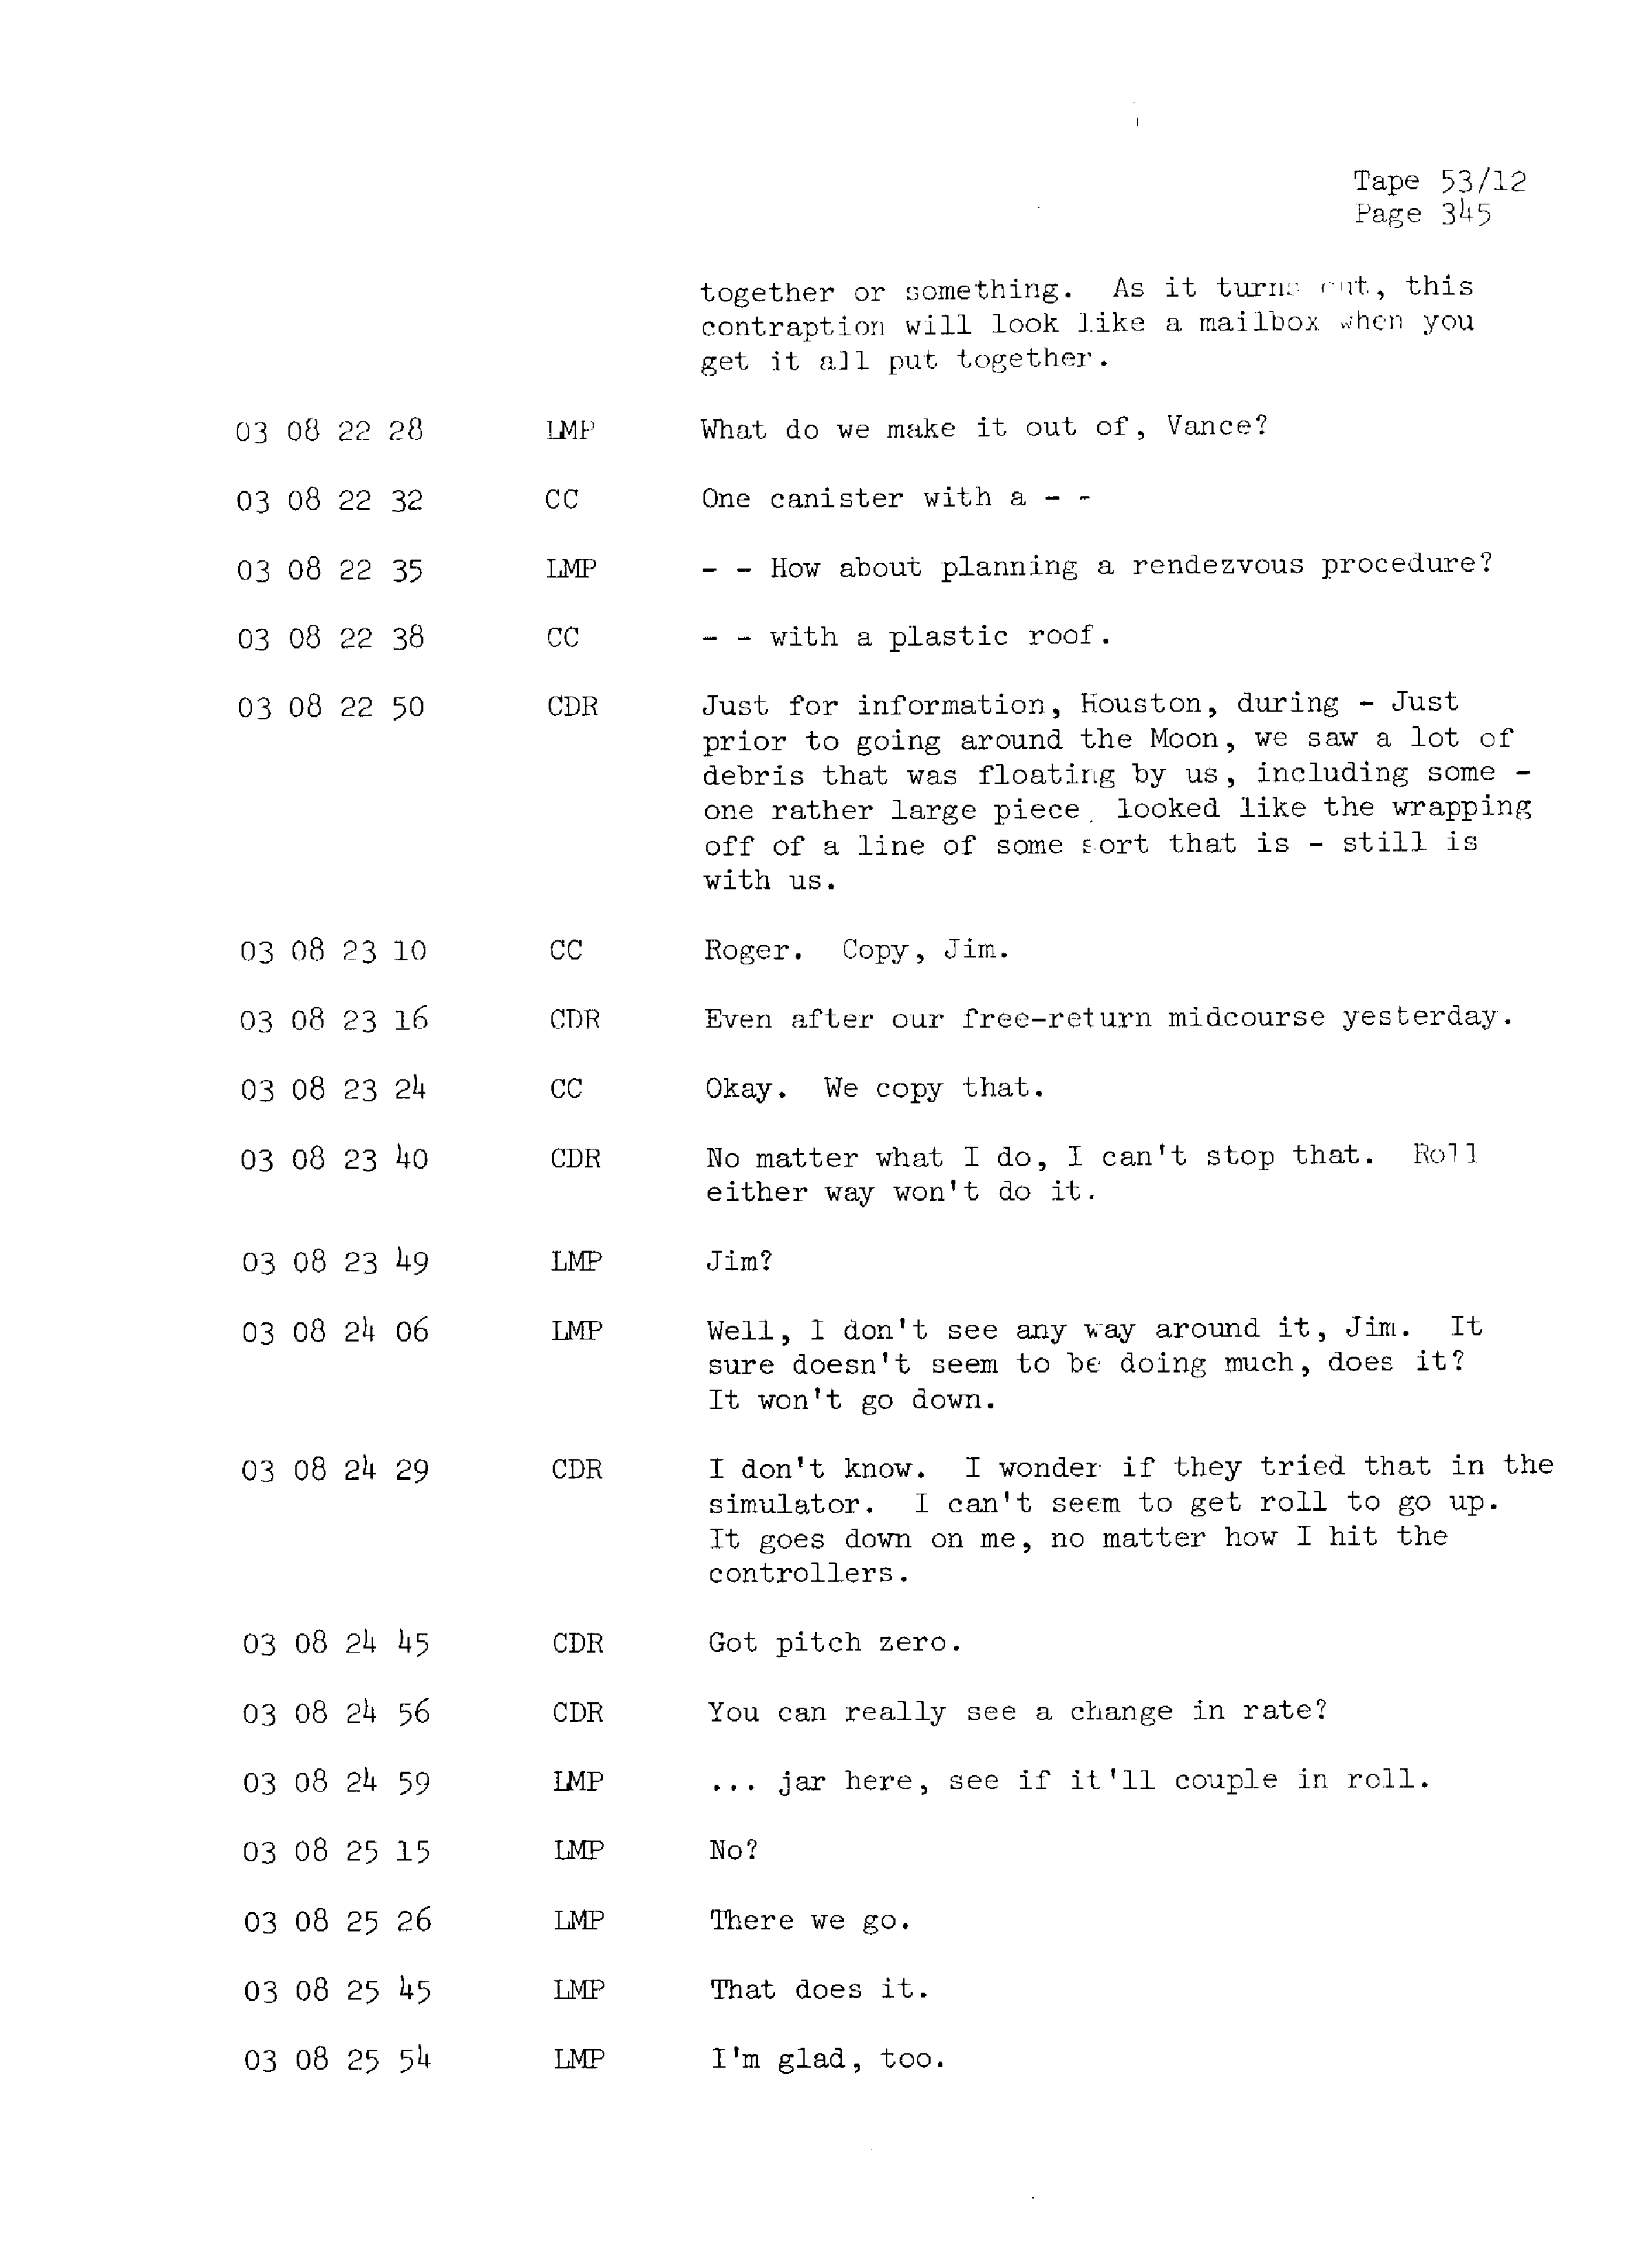 Page 352 of Apollo 13’s original transcript